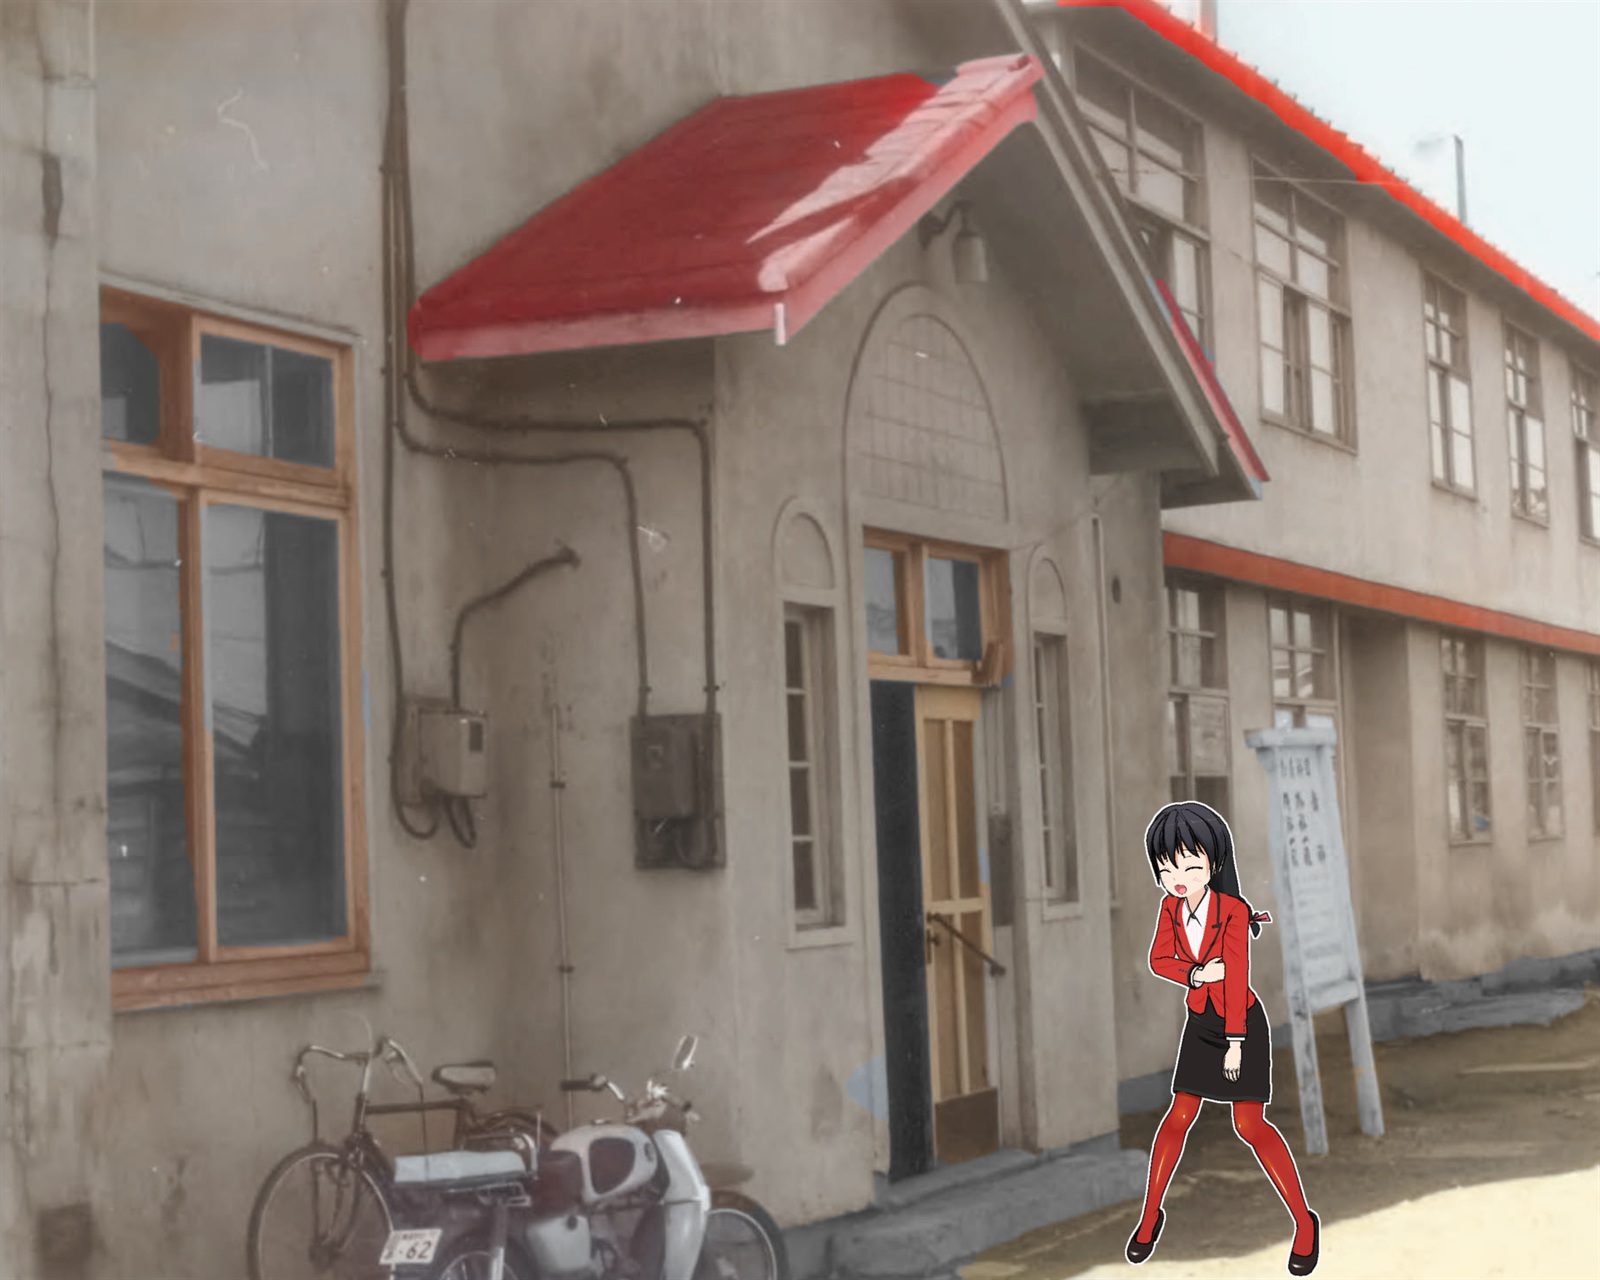 赤い屋根と灰色の外壁の東藻琴診療所に苦しそうに胃を押さえながら入ろうとしている赤いジャケット姿の女の子のイラスト